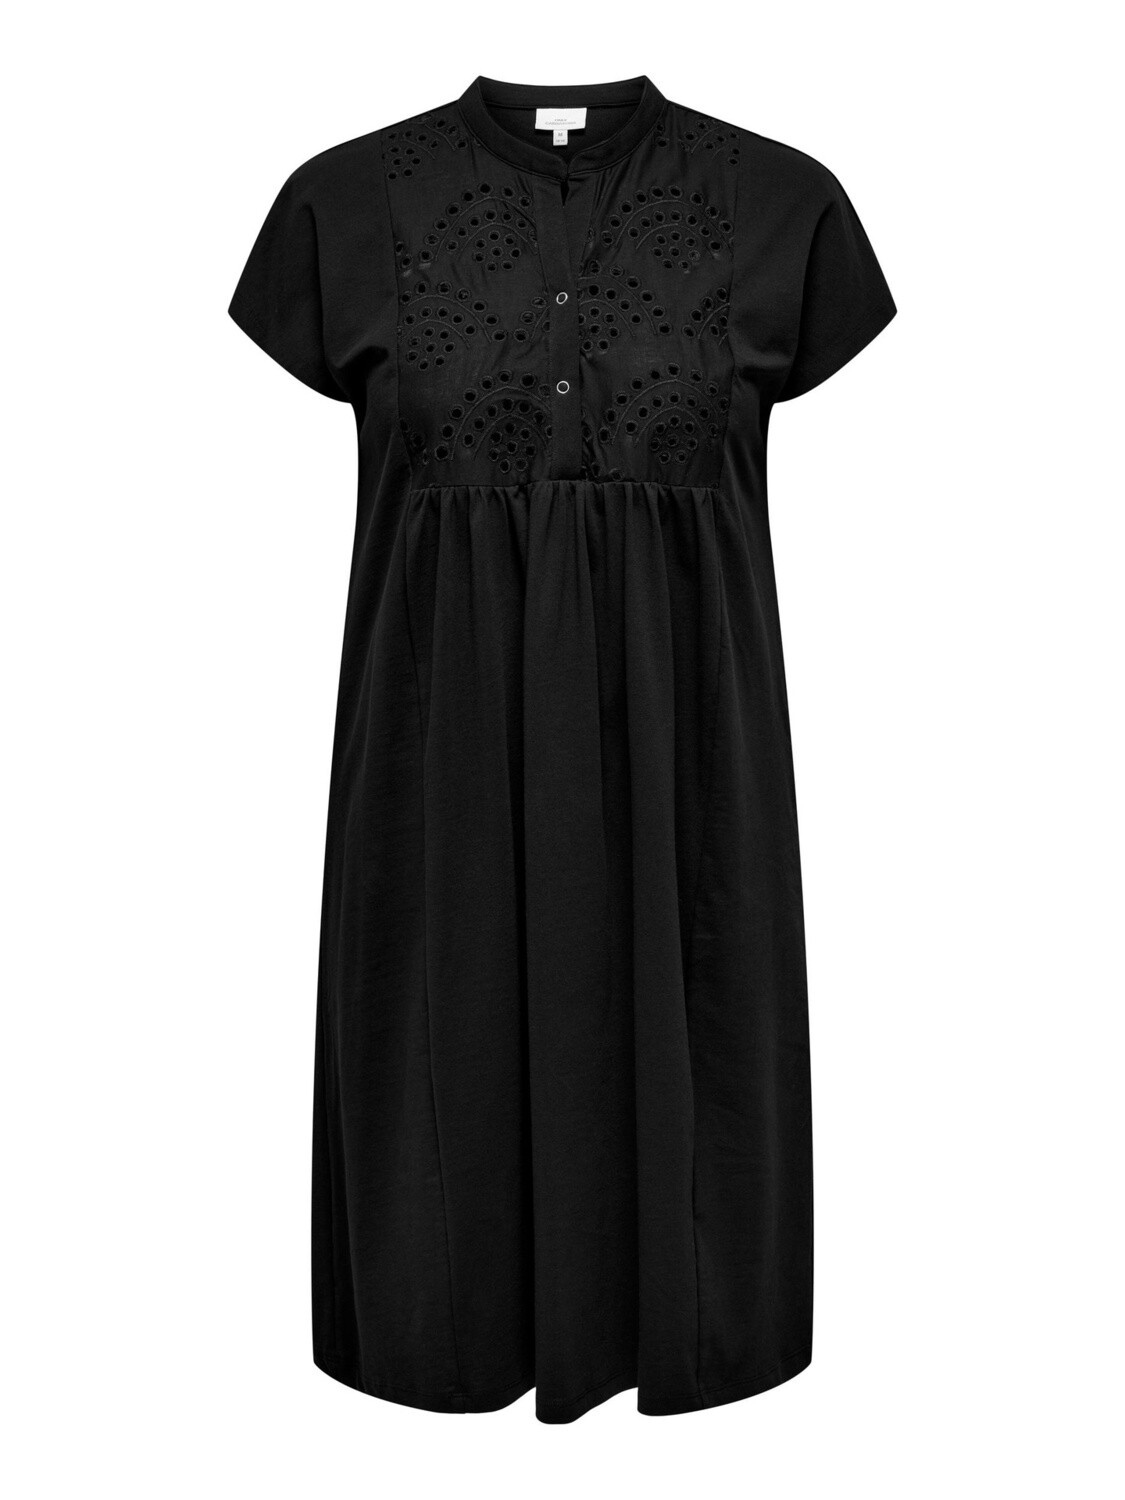 CARSILLAH LIFE SS BLK DRESS JRS, maat: S-42/44, kleur: Black